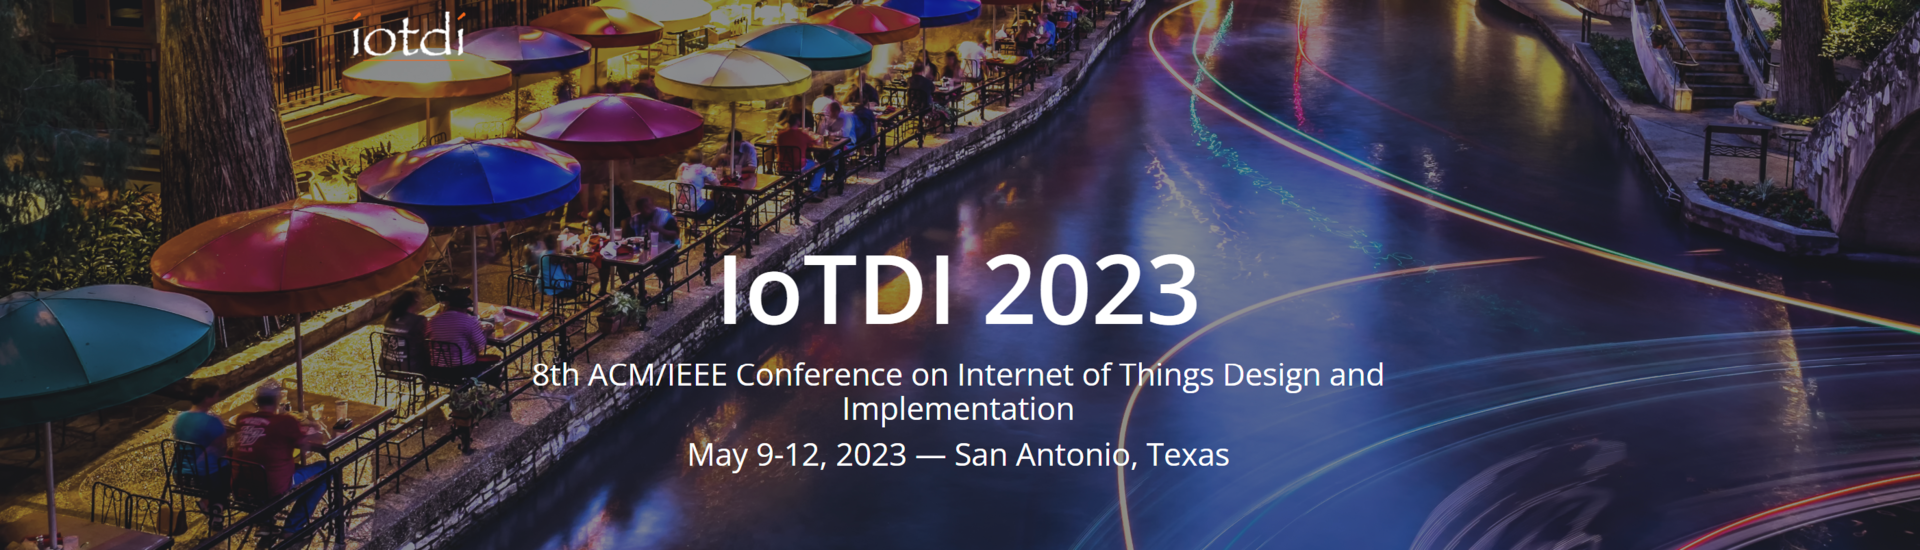 8. konference ACM/IEEE o návrhu a implementaci internetu věcí